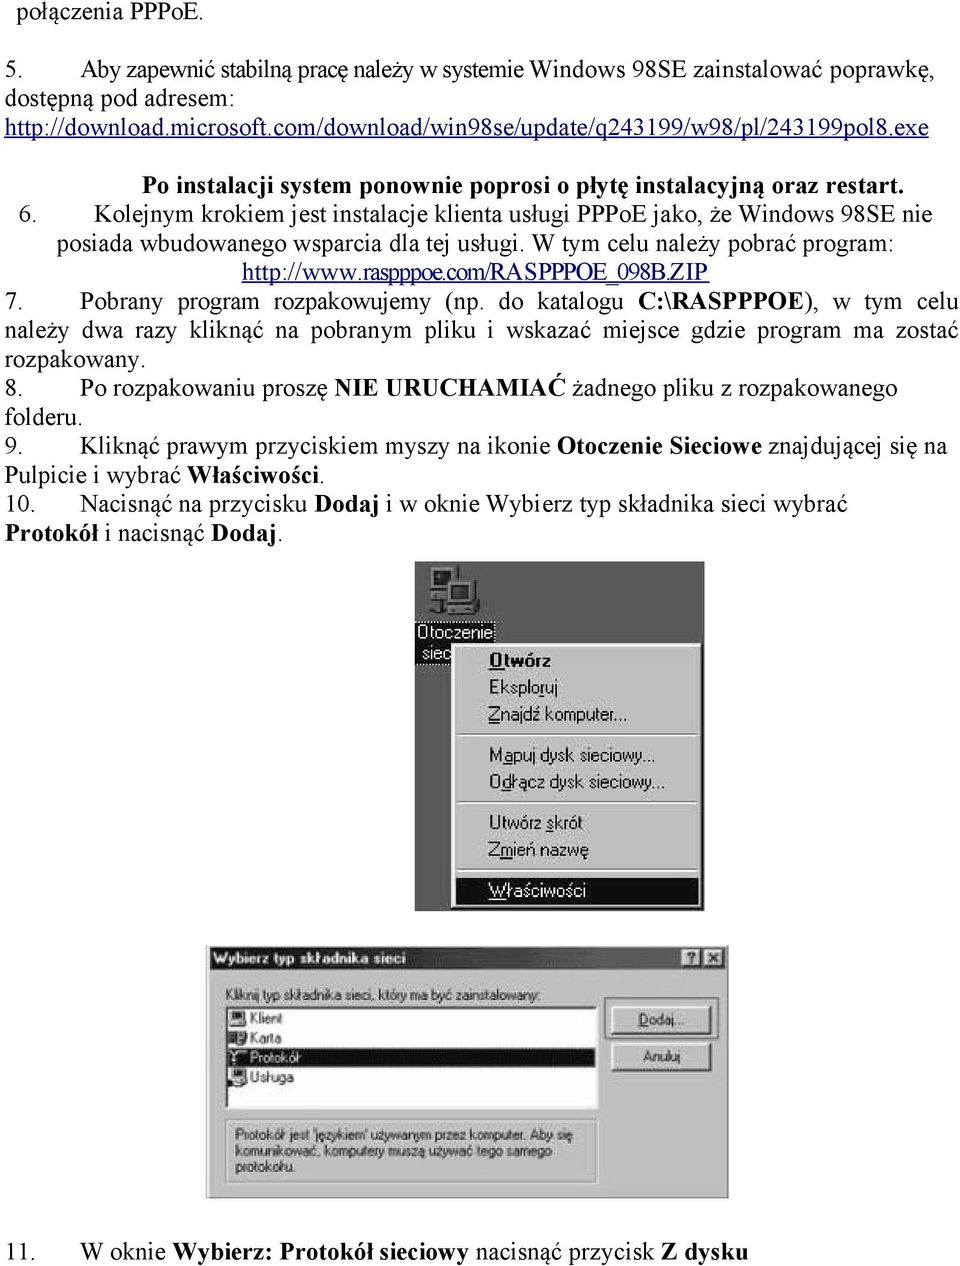 Kolejnym krokiem jest instalacje klienta usługi PPPoE jako, że Windows 98SE nie posiada wbudowanego wsparcia dla tej usługi. W tym celu należy pobrać program: http://www.raspppoe.com/ras PPPOE_098B.